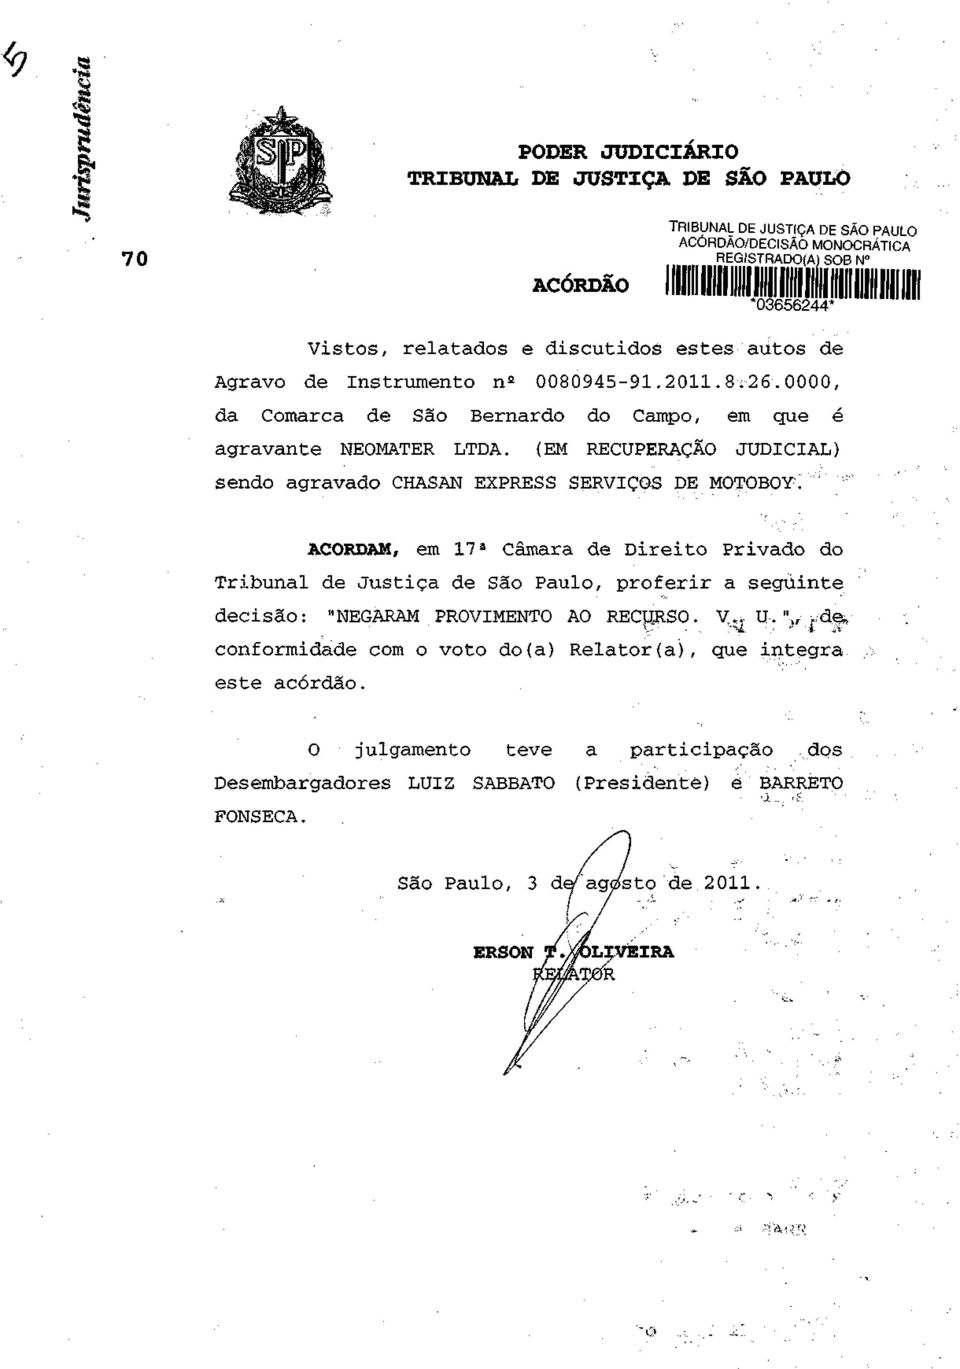 (EM RECUPERAÇÃO JUDICIAL) sendo agravado CHASAN EXPRESS SERVIÇOS DE MOTQBOYl" ACORDAM, em 17 a Câmara de Direito Privado do Tribunal de Justiça de São Paulo, proferir a seguinte decisão: "NEGARAM